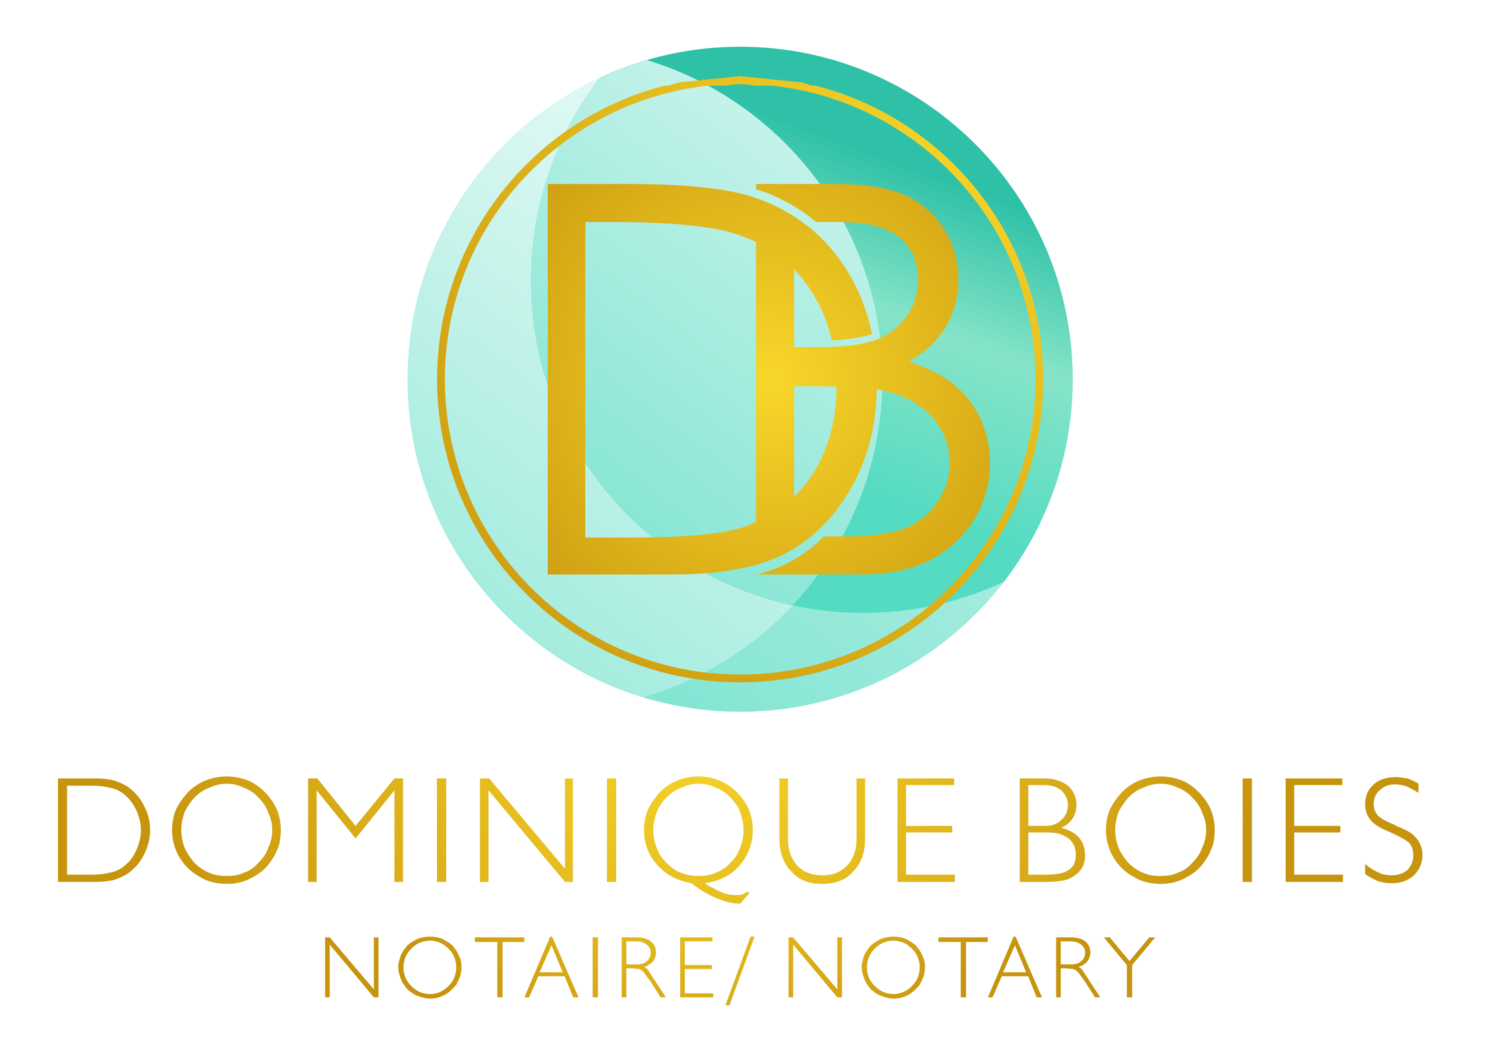 Dominique Boies Notaire